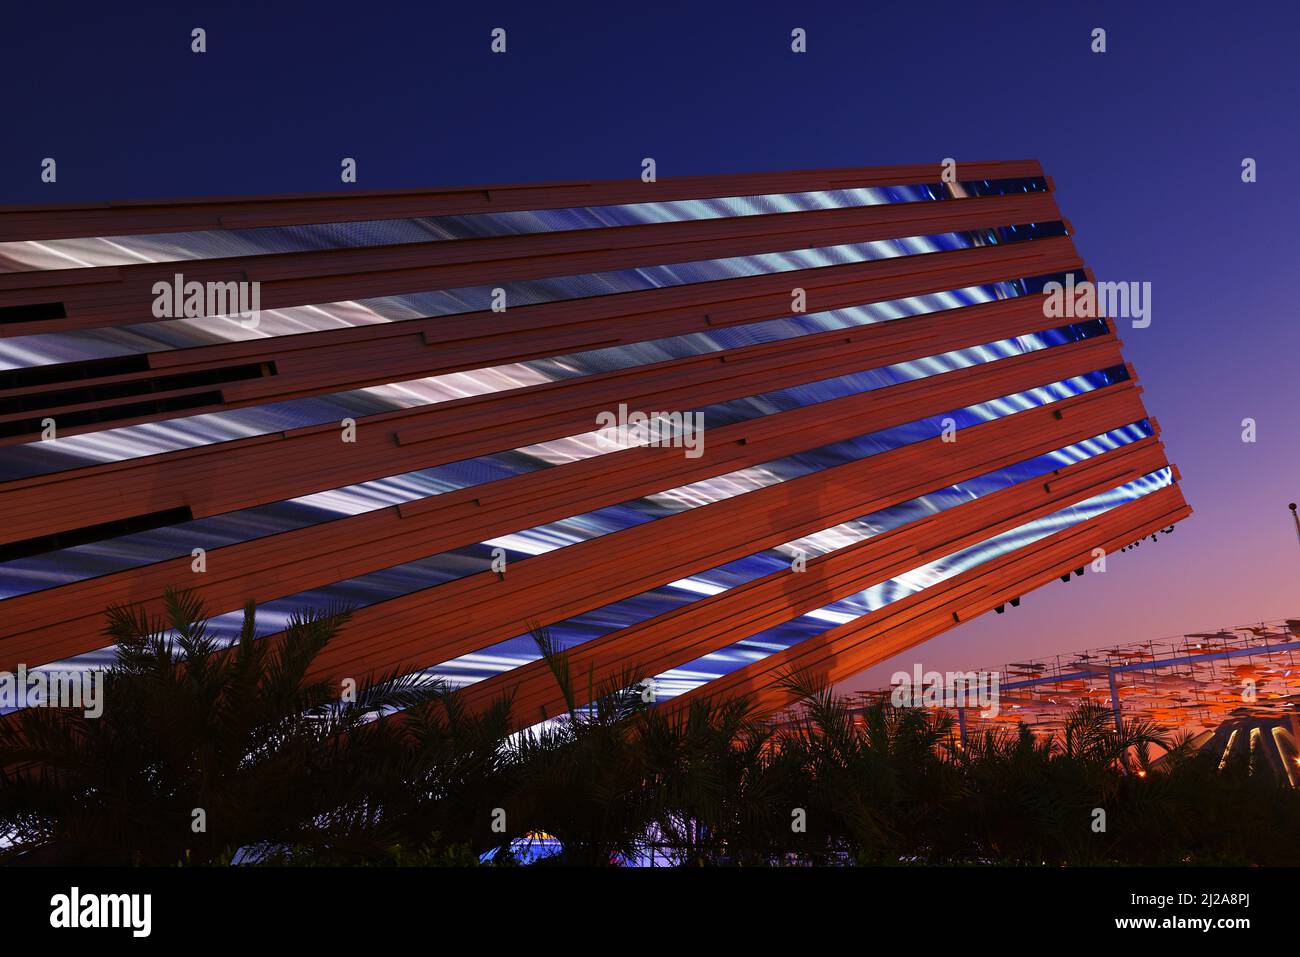 Kunst, Dubai Expo, Weltausstellung, Architektur, Der Pavillon des Königreich Saudi Arabien ist eine Metall und Glasstruktur der modernen Architektur Foto de stock